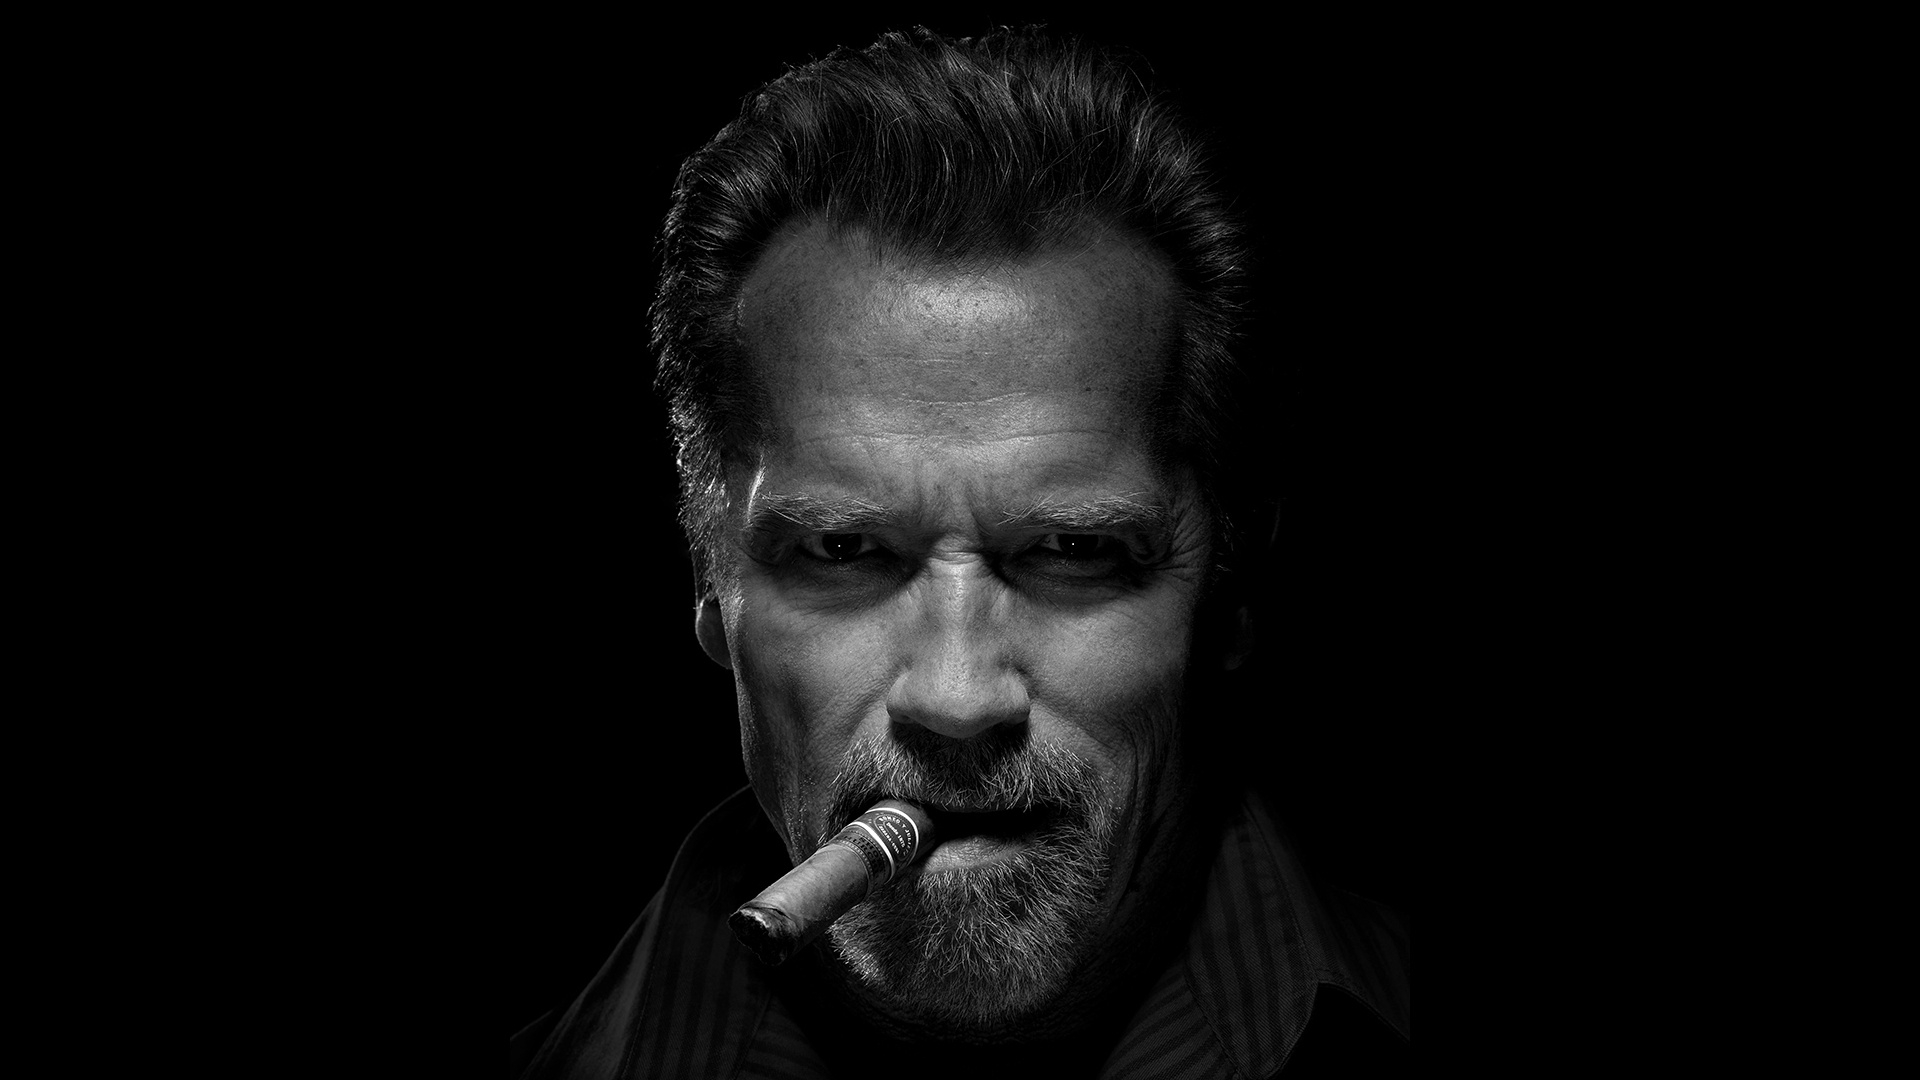 Бесплатное фото Арнольд Шварценеггер с сигарой на черном фоне